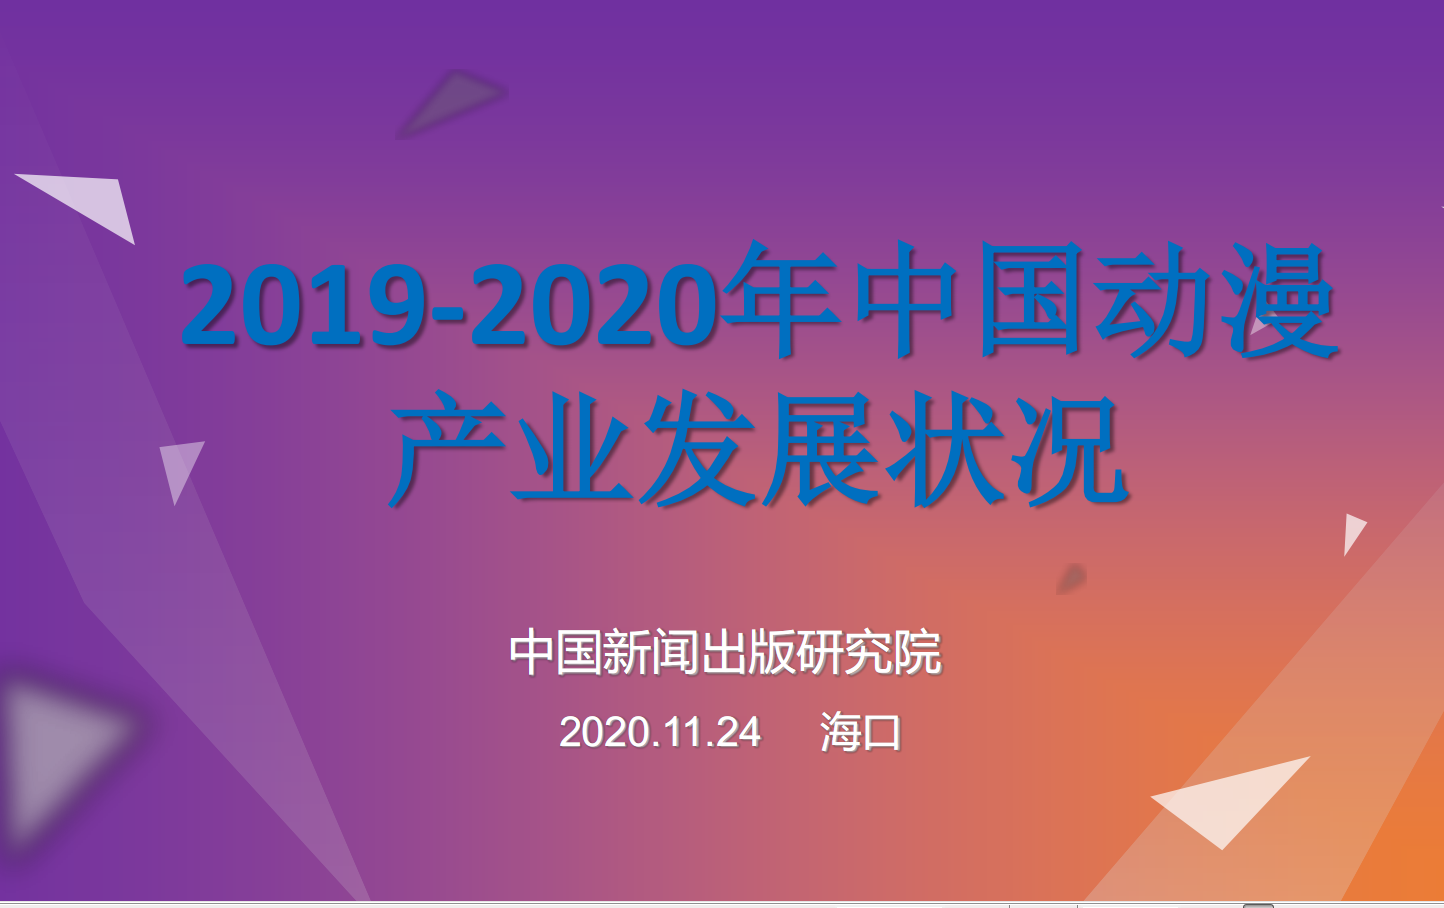 2019-2020中国动漫产业发展状况